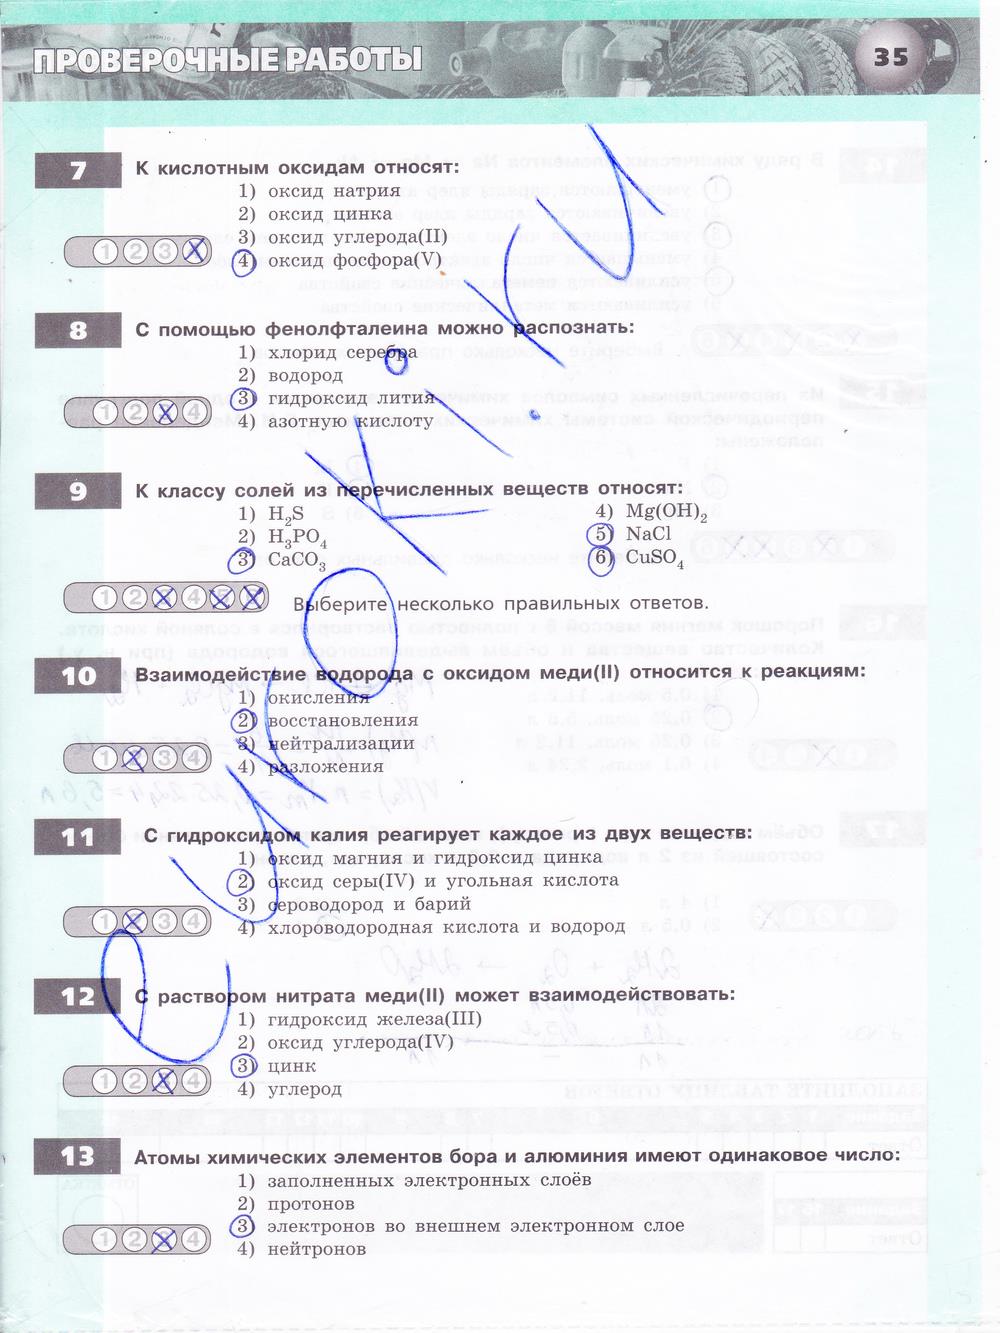 гдз 8 класс тетрадь-экзаменатор страница 35 химия Бобылева, Бирюлина